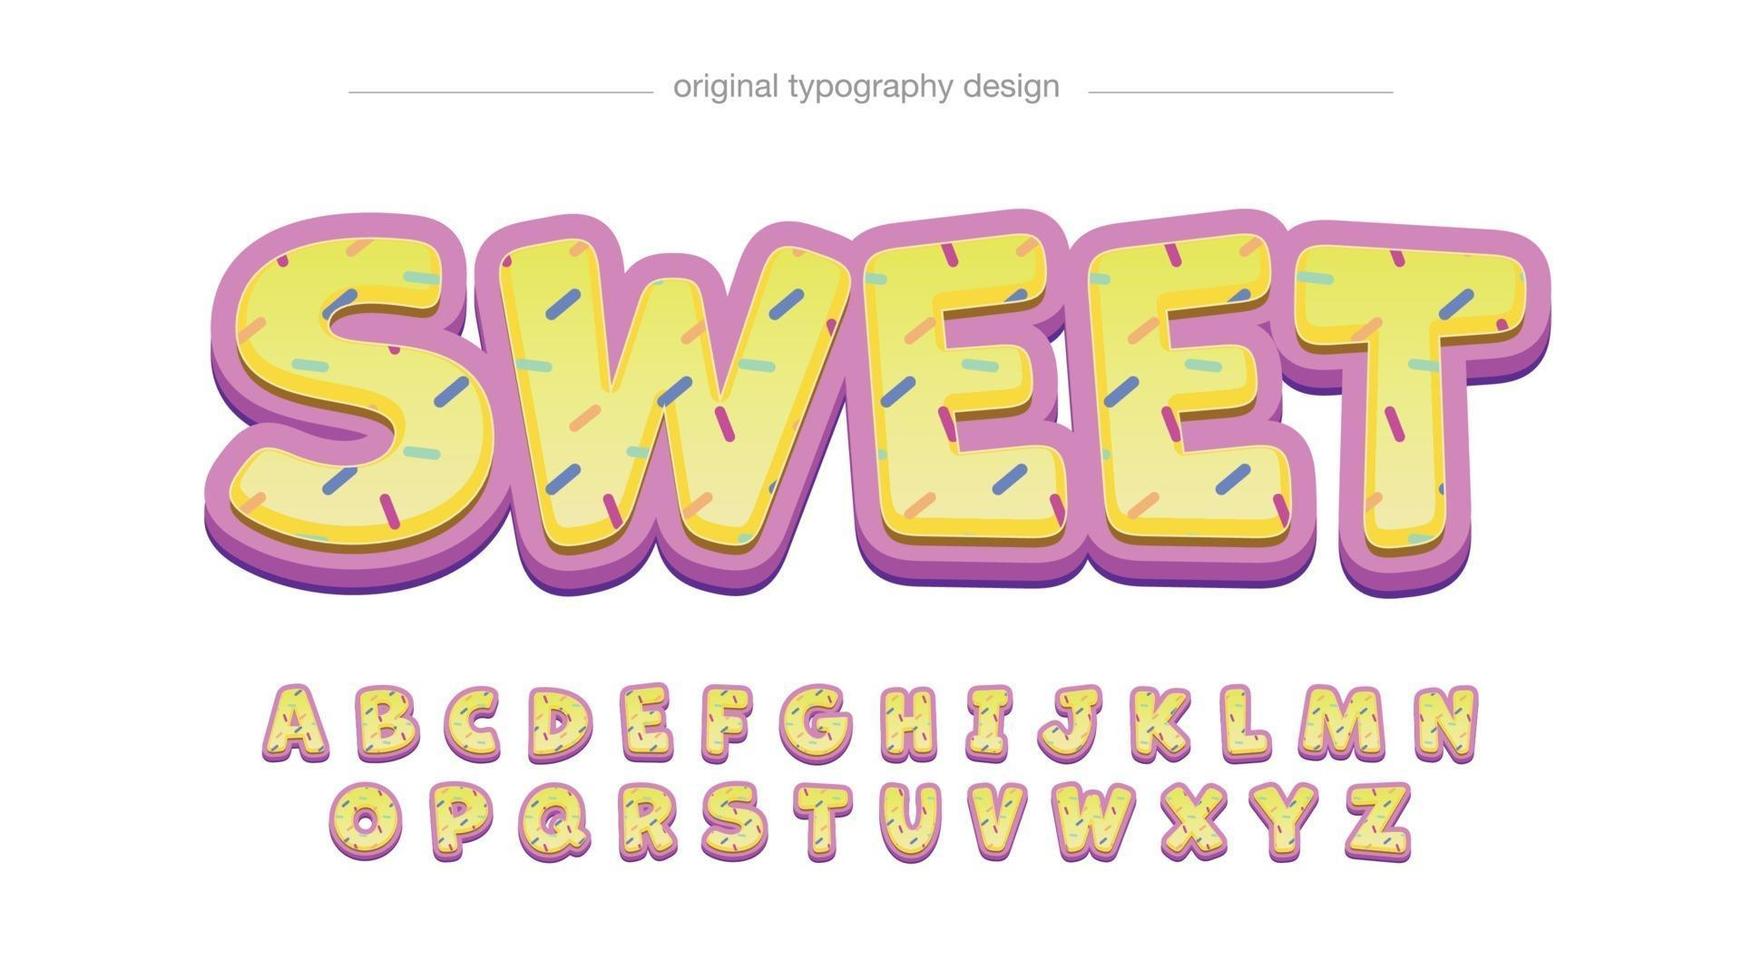 abstrakte Cartoon-Typografie des gelben und rosa Donuts vektor